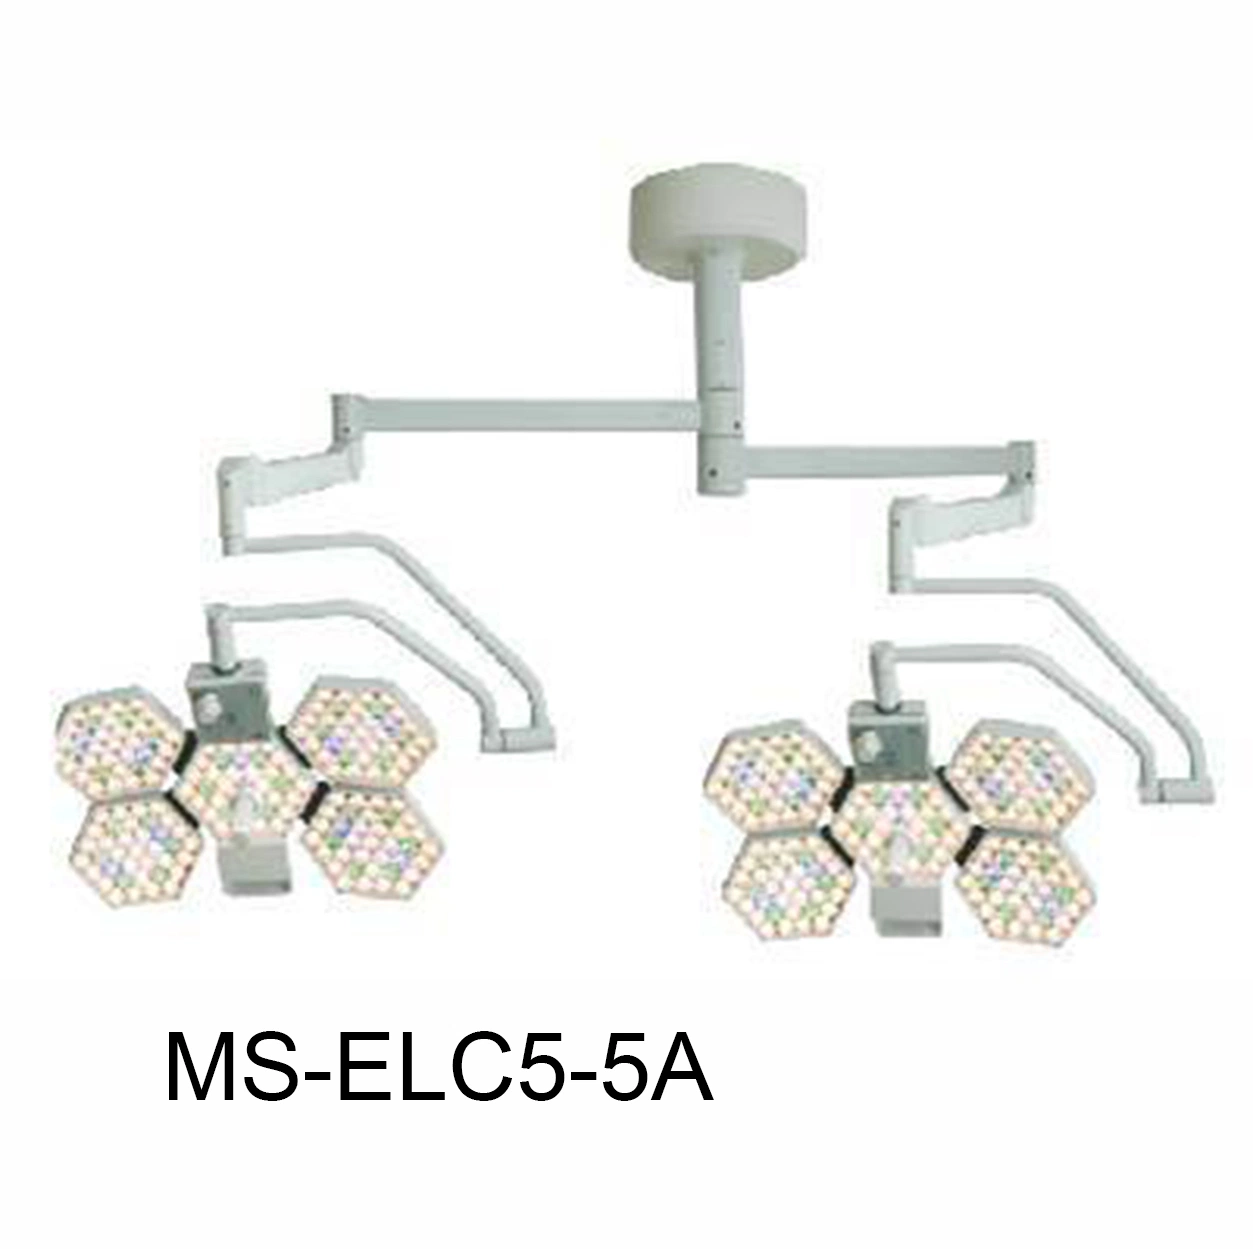 (MS-ELC5*5A) Luz de operación quirúrgica de funcionamiento sin sombras LED de temperatura ajustable